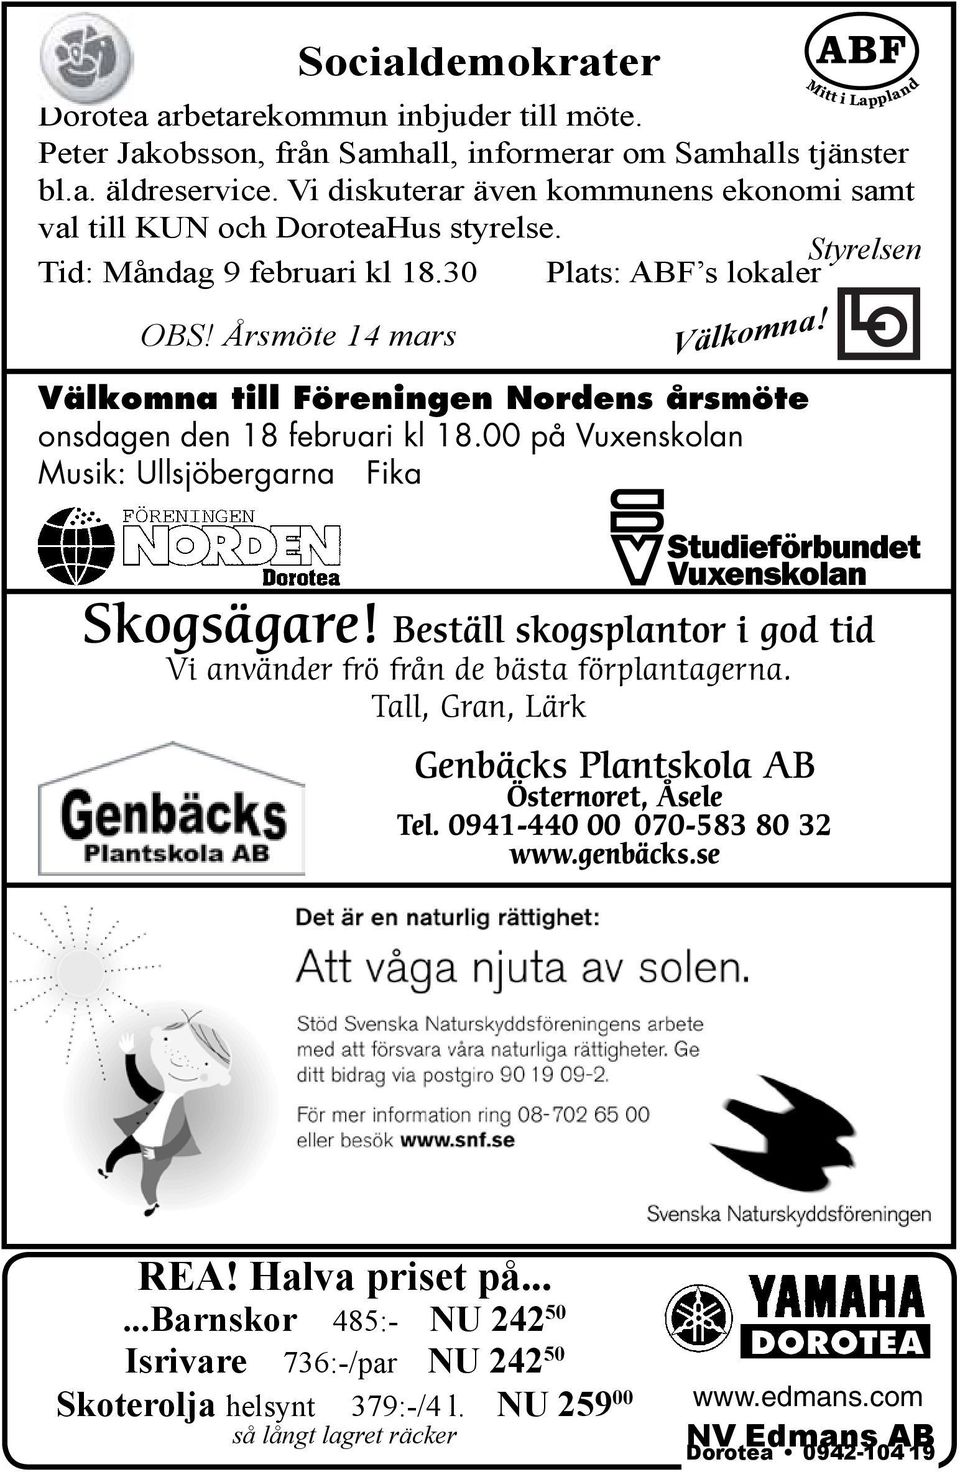 Årsmöte 14 mars Välkomna till Föreningen Nordens årsmöte onsdagen den 18 februari kl 18.00 på Vuxenskolan Musik: Ullsjöbergarna Fika Skogsägare!